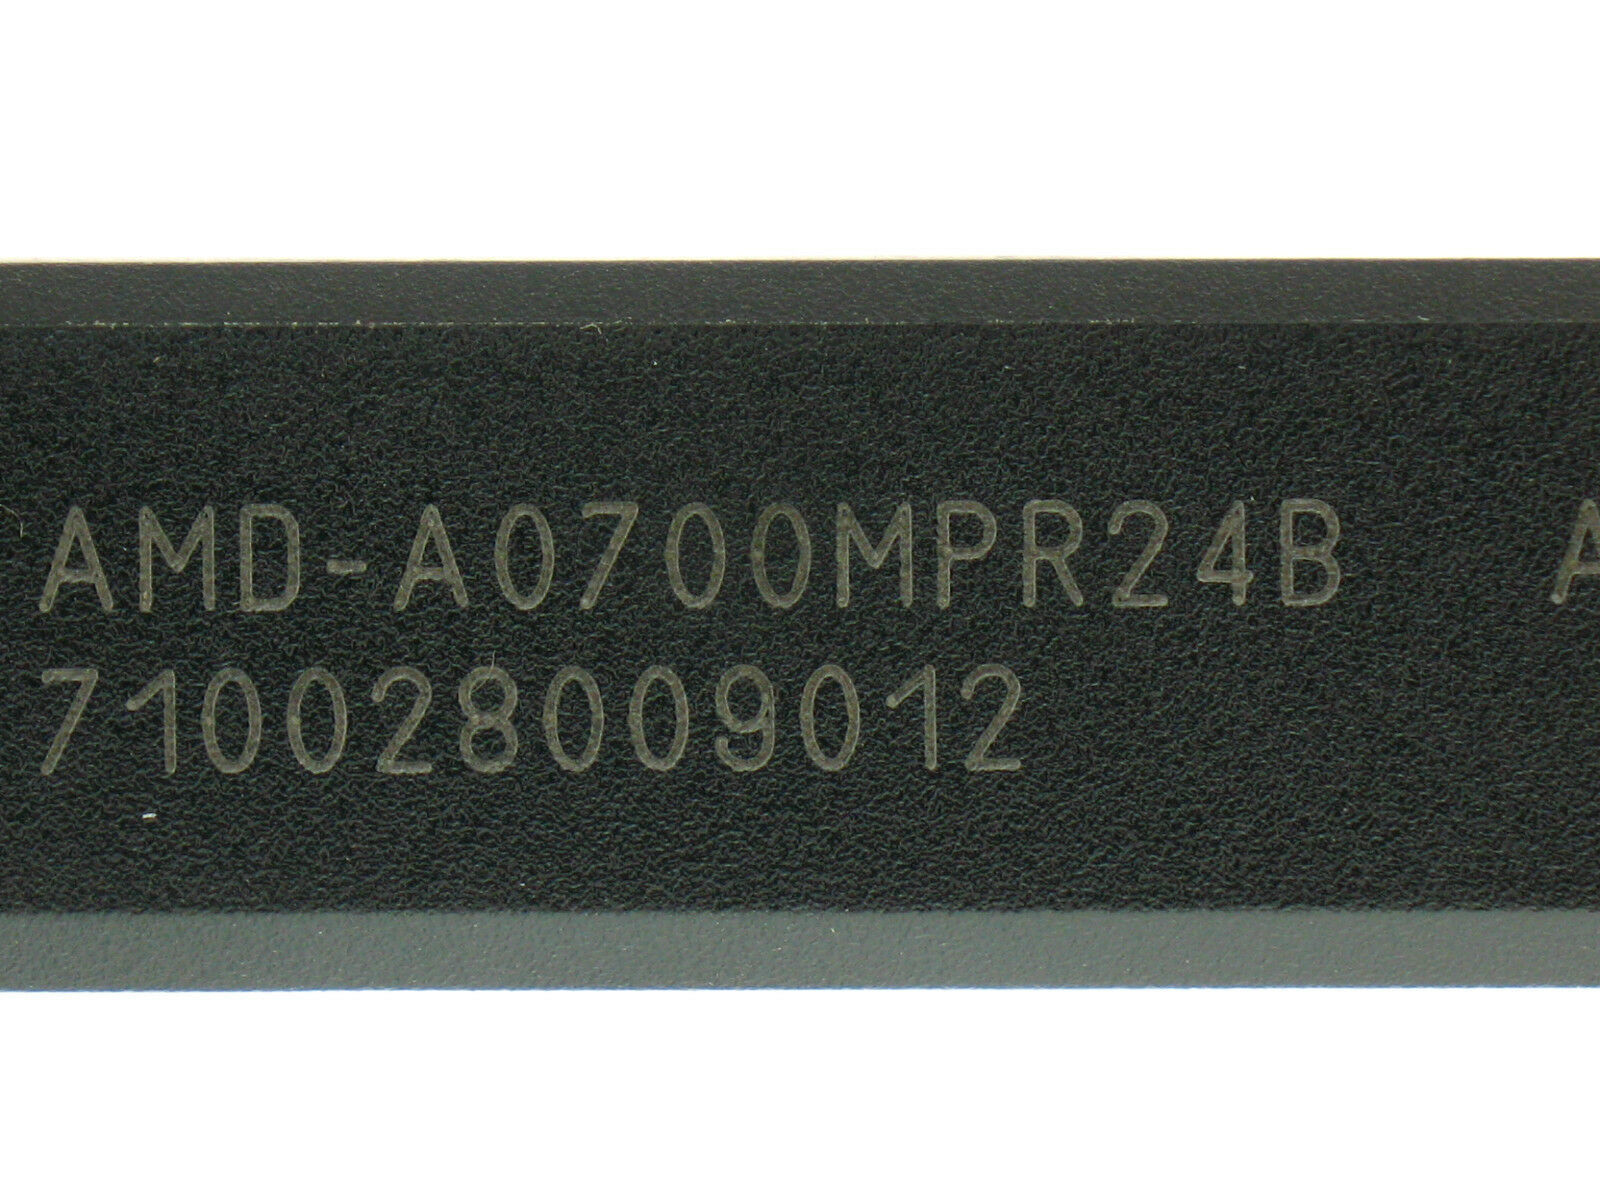 Primary image for AMD Athlon - K7 700 MHz ({AMD-A0700MPR24B}) Processor